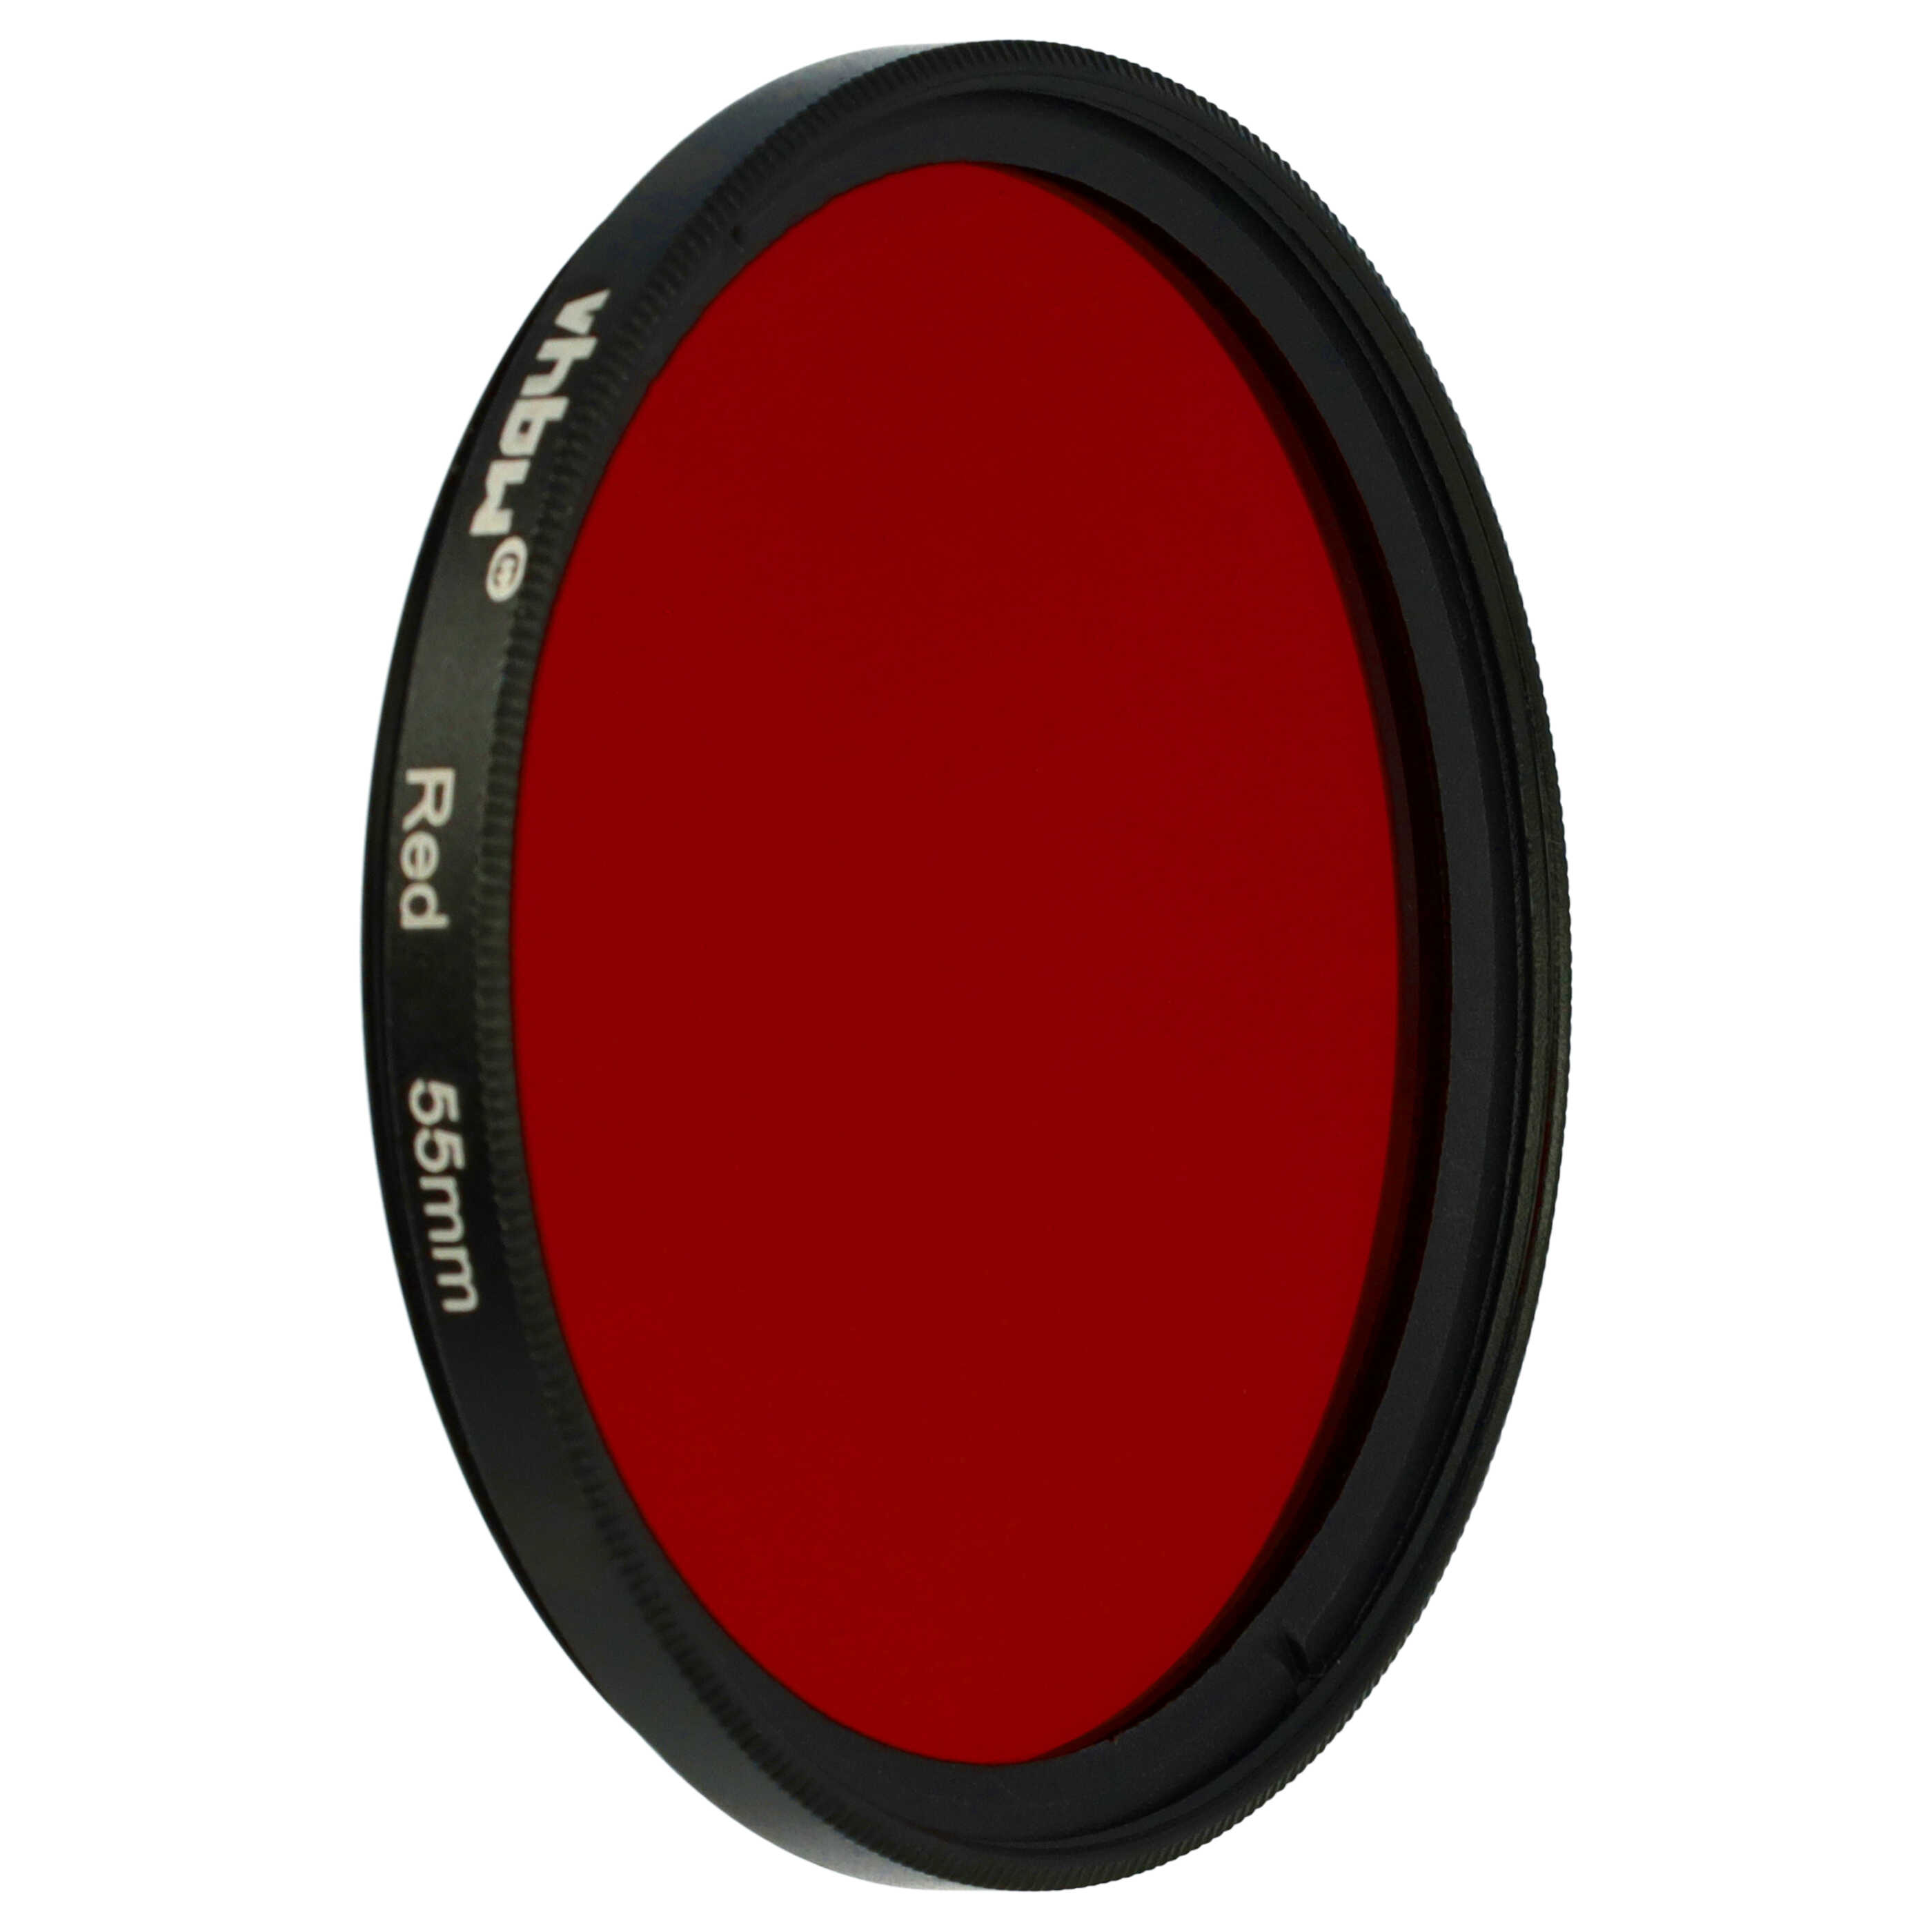 Farbfilter rot passend für Kamera Objektive mit 55 mm Filtergewinde - Rotfilter